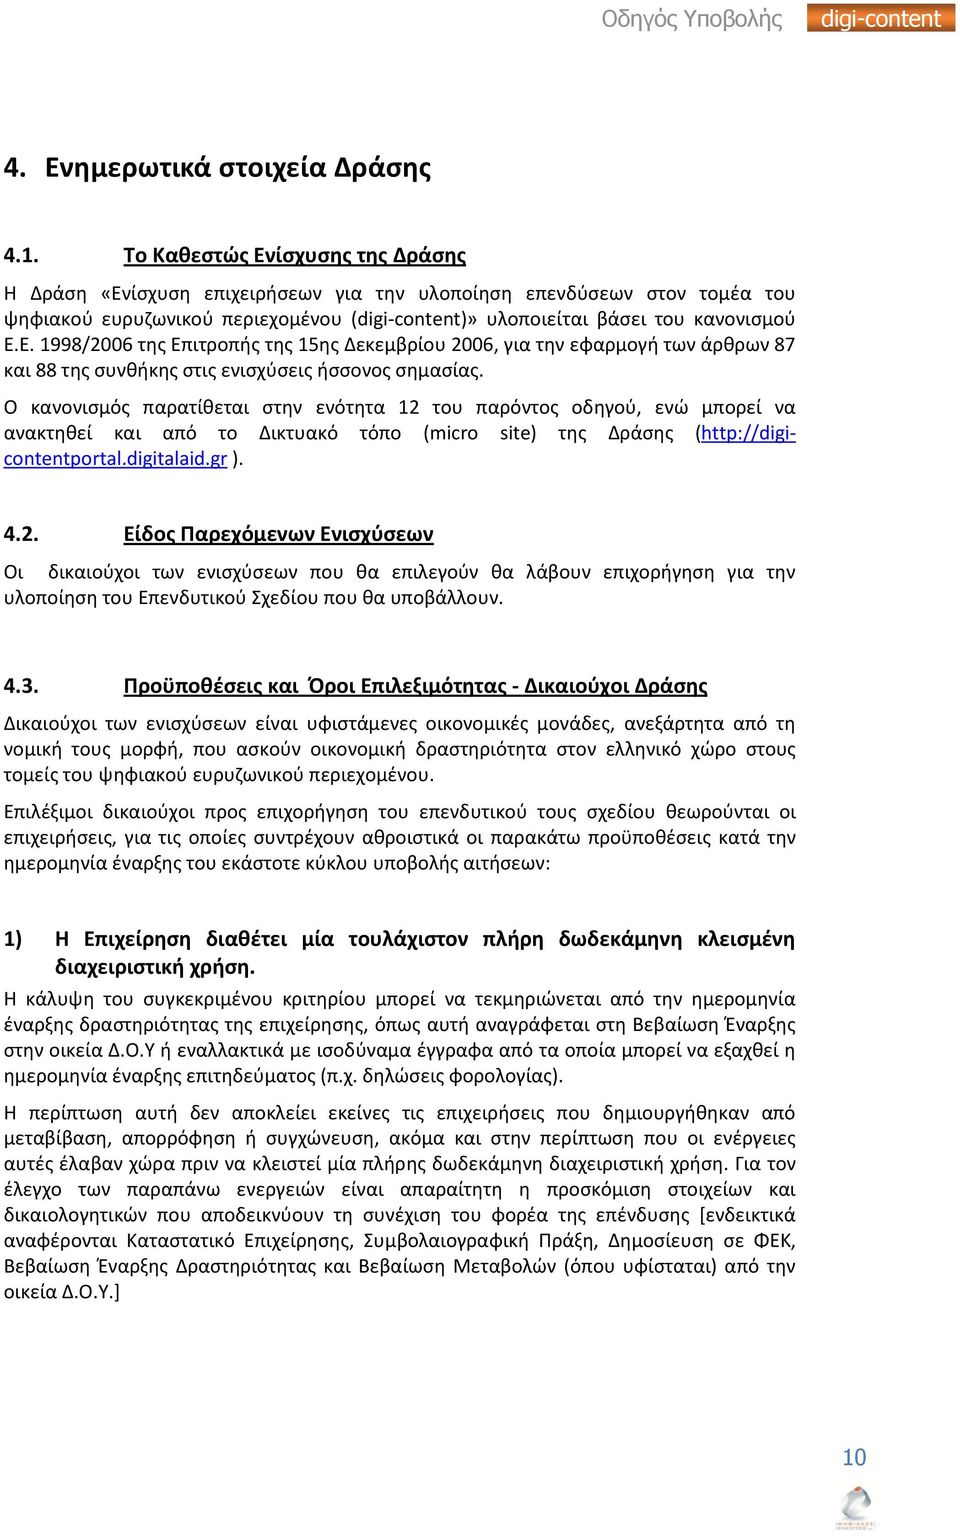 Ο κανονιςμόσ παρατίκεται ςτθν ενότθτα 12 του παρόντοσ οδθγοφ, ενϊ μπορεί να ανακτθκεί και από το Δικτυακό τόπο (micro site) τθσ Δράςθσ (http://digicontentportal.digitalaid.gr ). 4.2. Είδοσ Ραρεχόμενων Ενιςχφςεων Οι δικαιοφχοι των ενιςχφςεων που κα επιλεγοφν κα λάβουν επιχοριγθςθ για τθν υλοποίθςθ του Επενδυτικοφ Σχεδίου που κα υποβάλλουν.